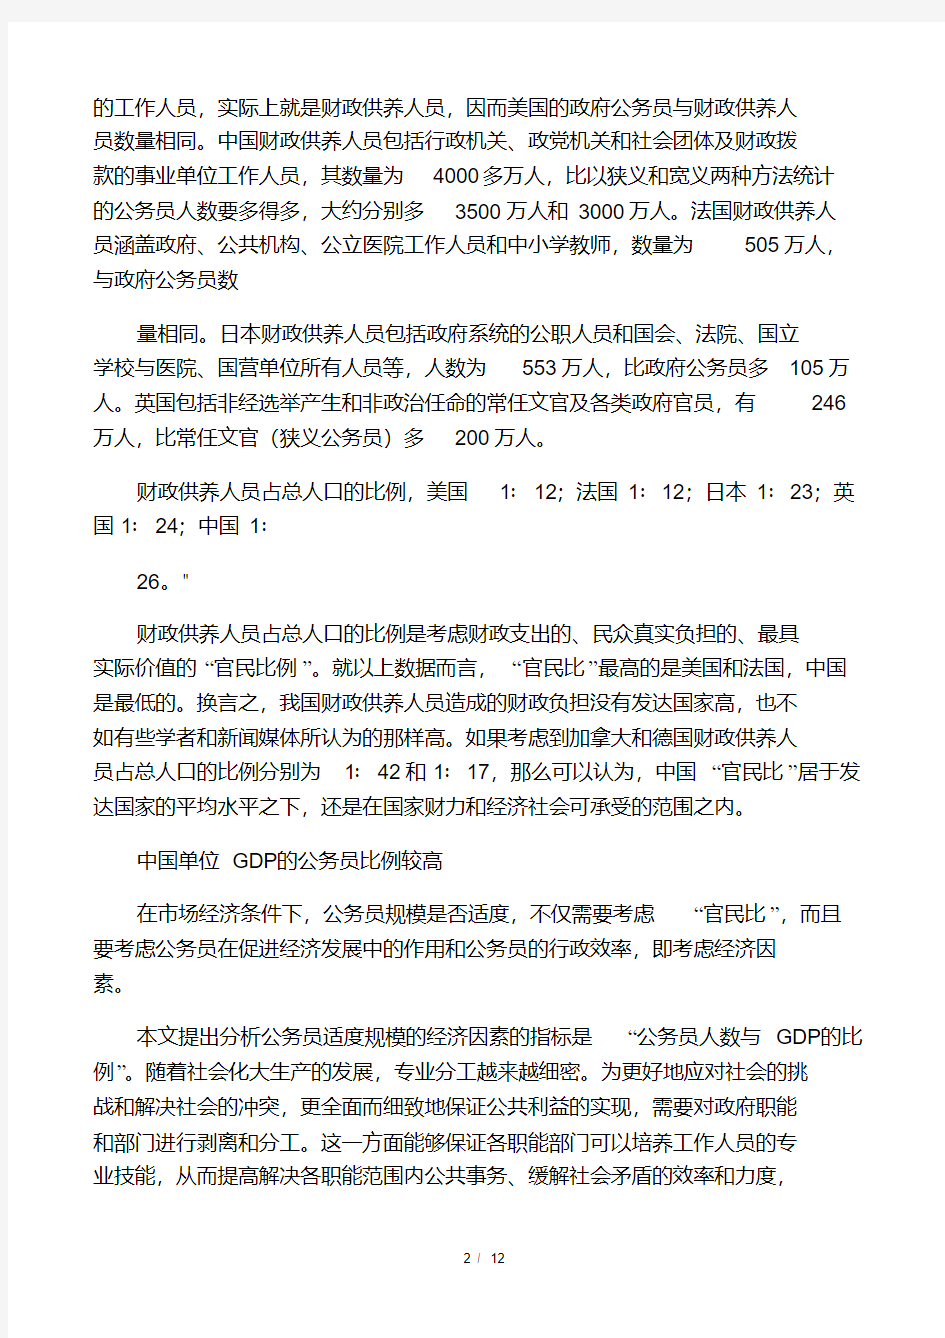 中国公务员数量参考资料.pdf